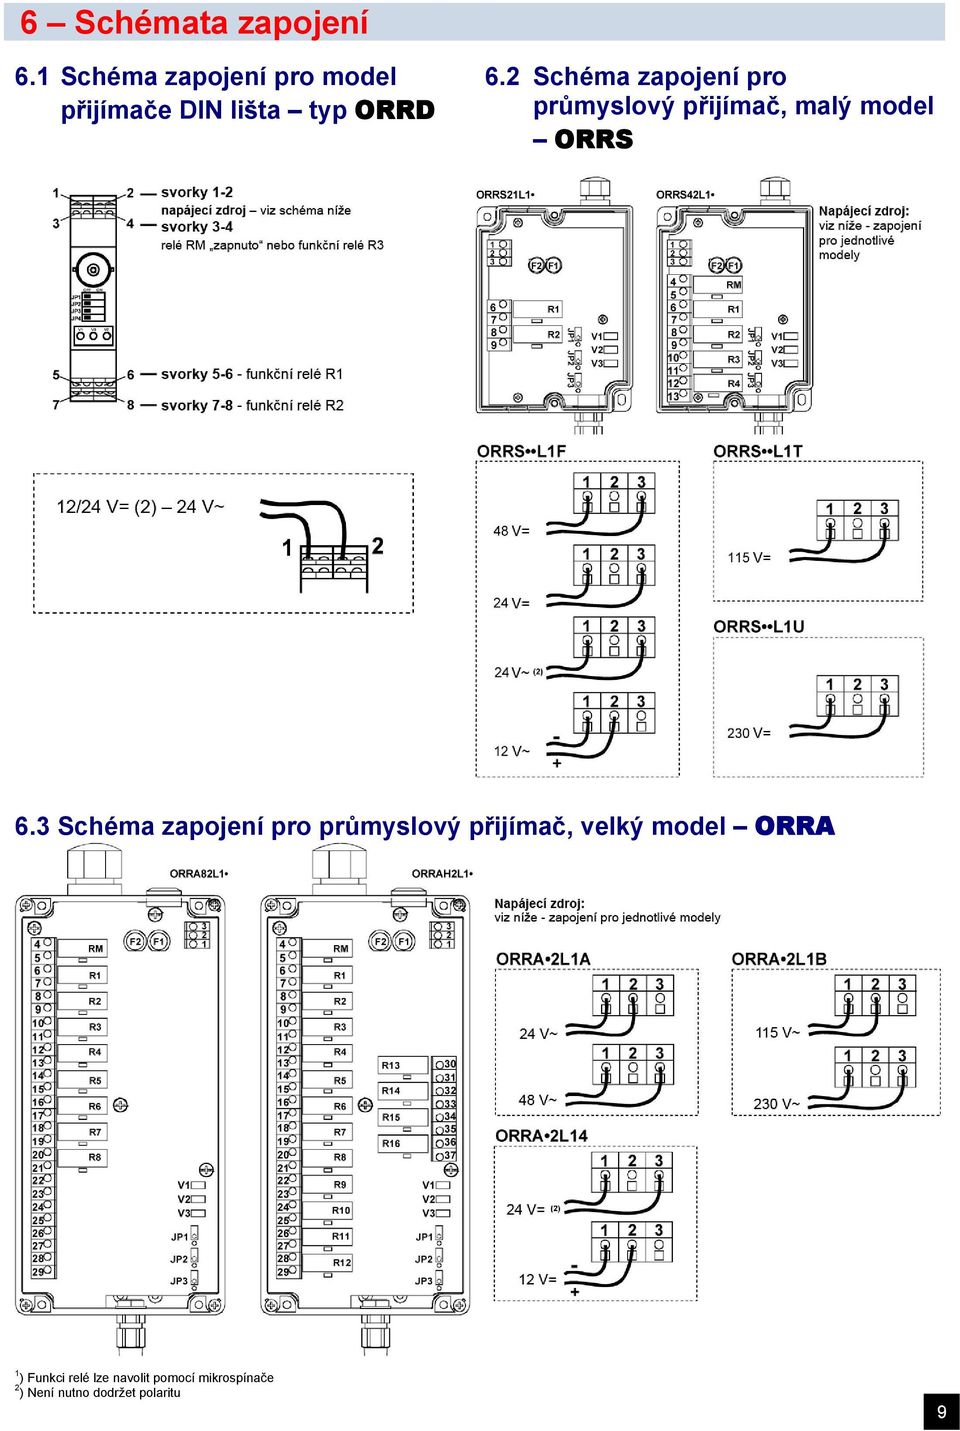 2 Schéma zapojení pro průmyslový přijímač, malý ORRS 6.